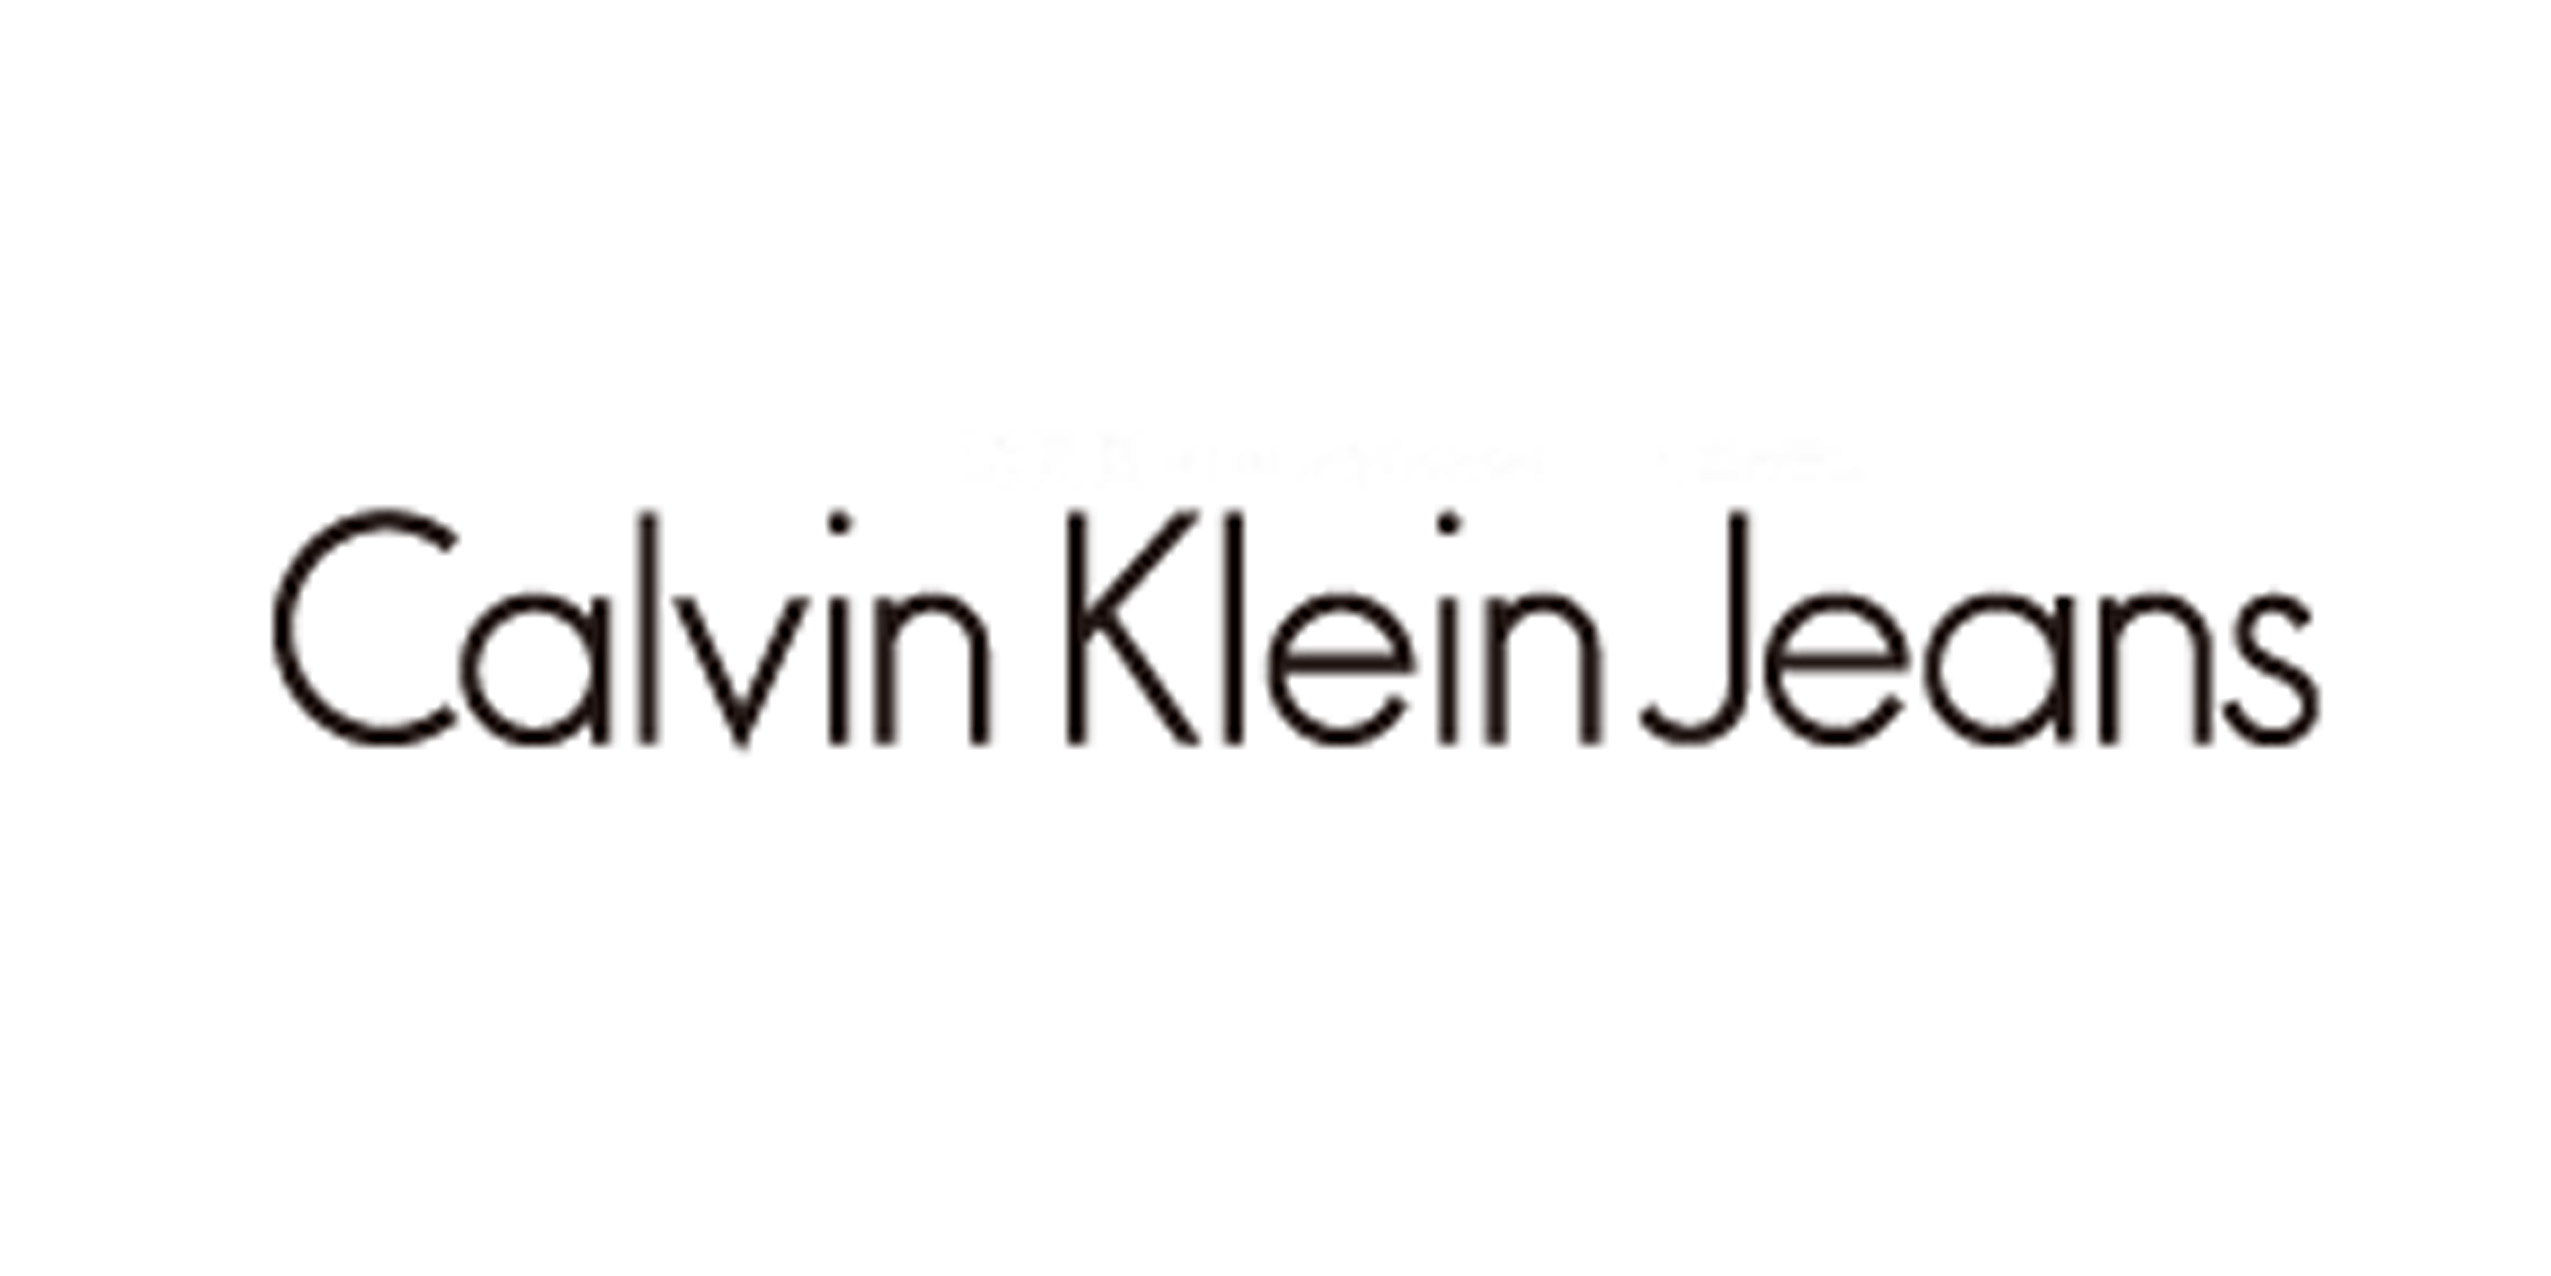 Calvin Klein jeans